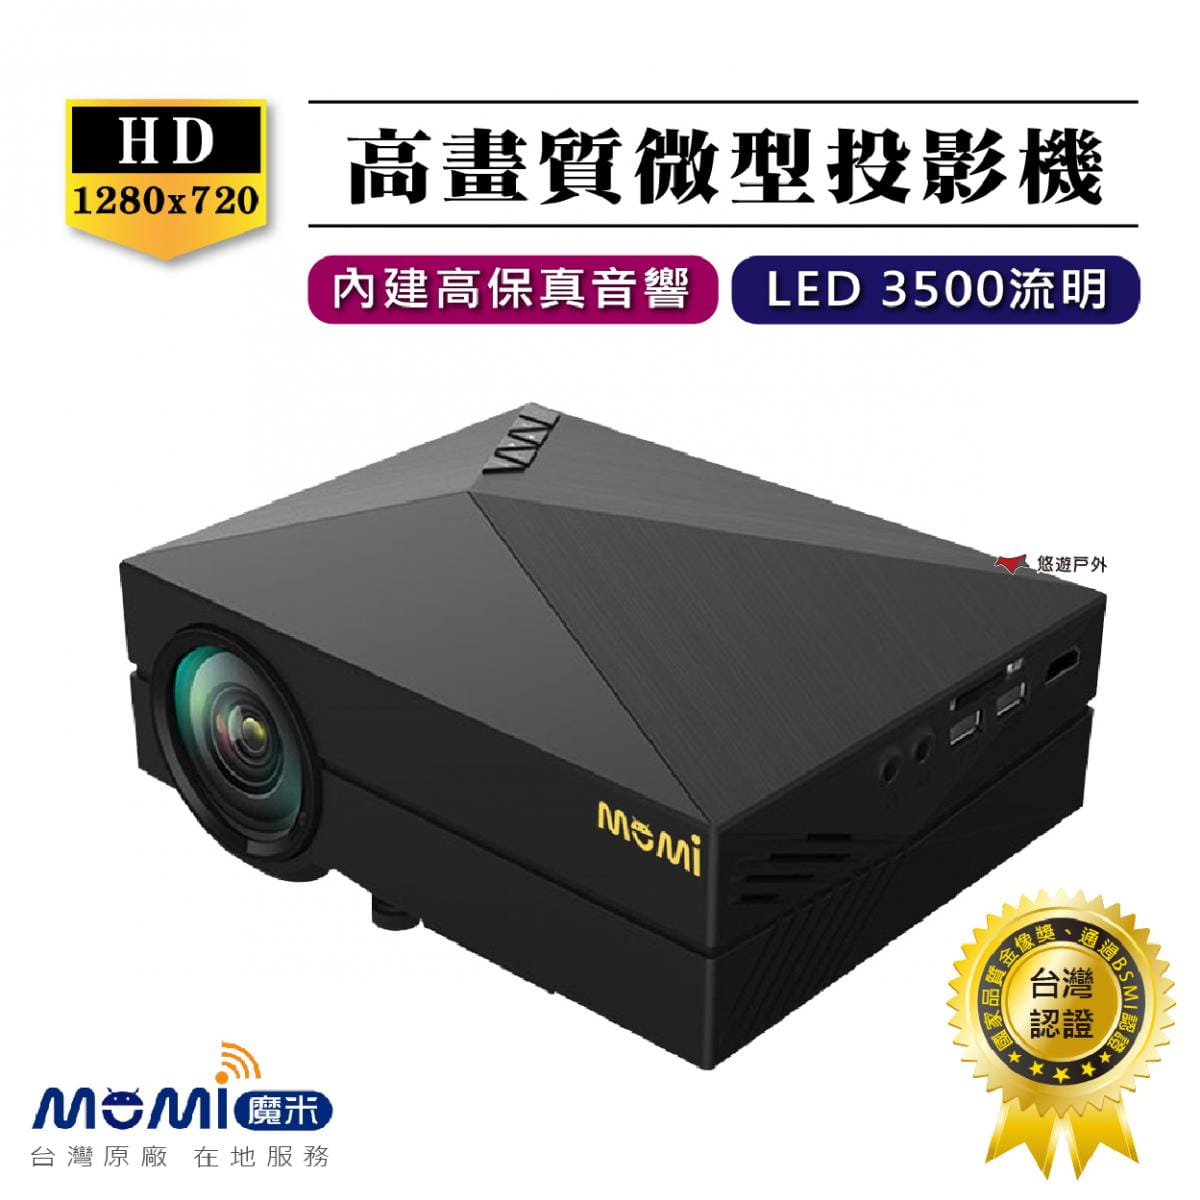 【MOMI魔米】X800微型投影機+50吋布幕 (悠遊戶外) 0